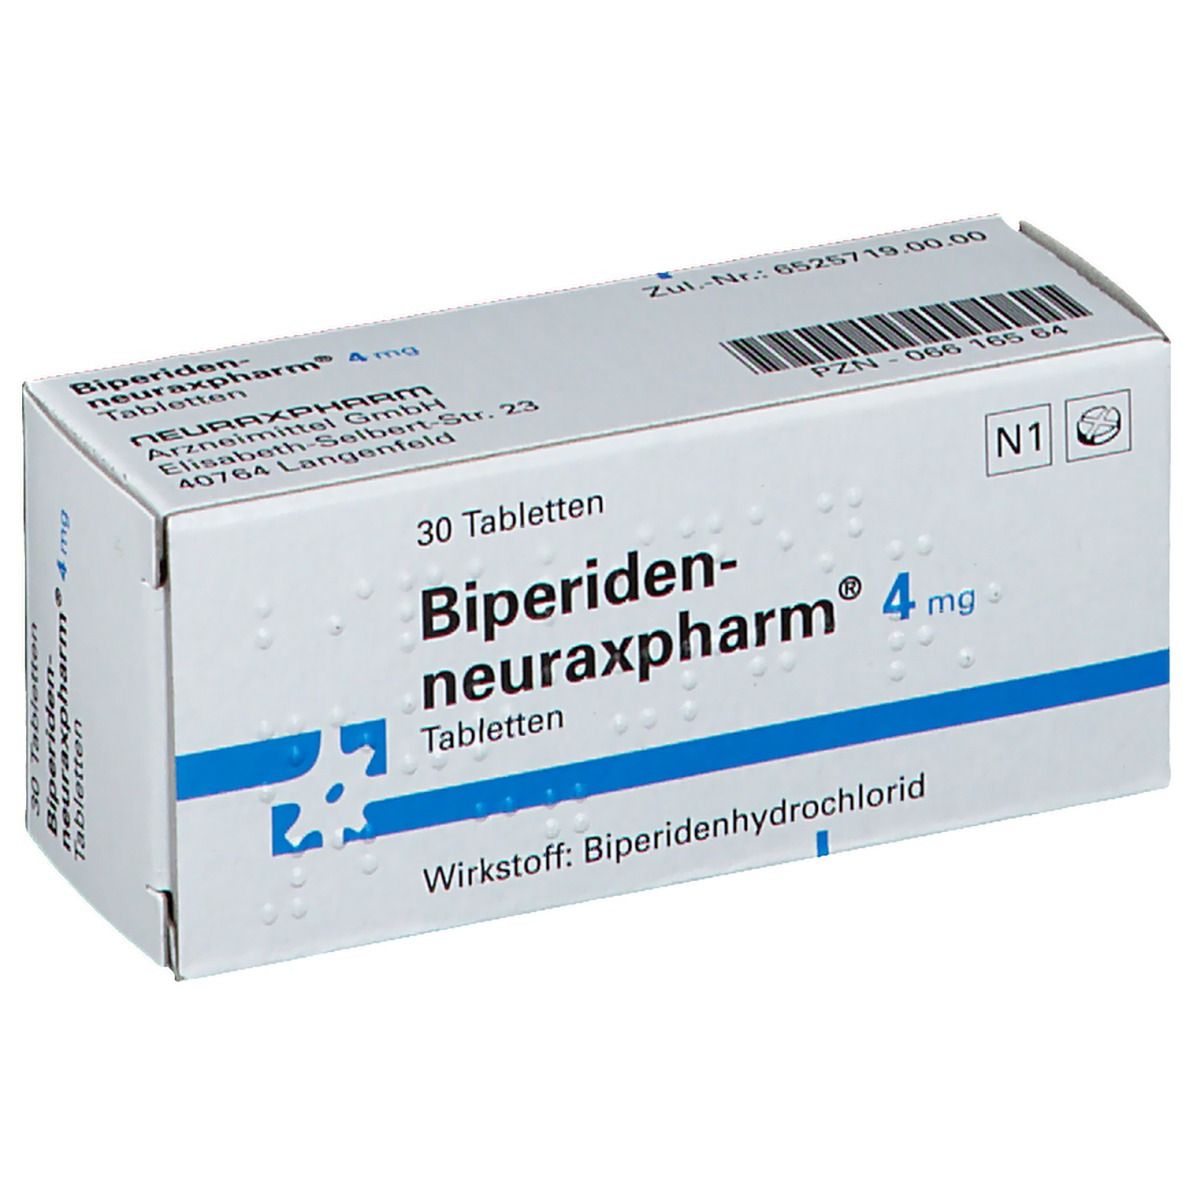 Biperiden-neuraxpharm® 4 mg